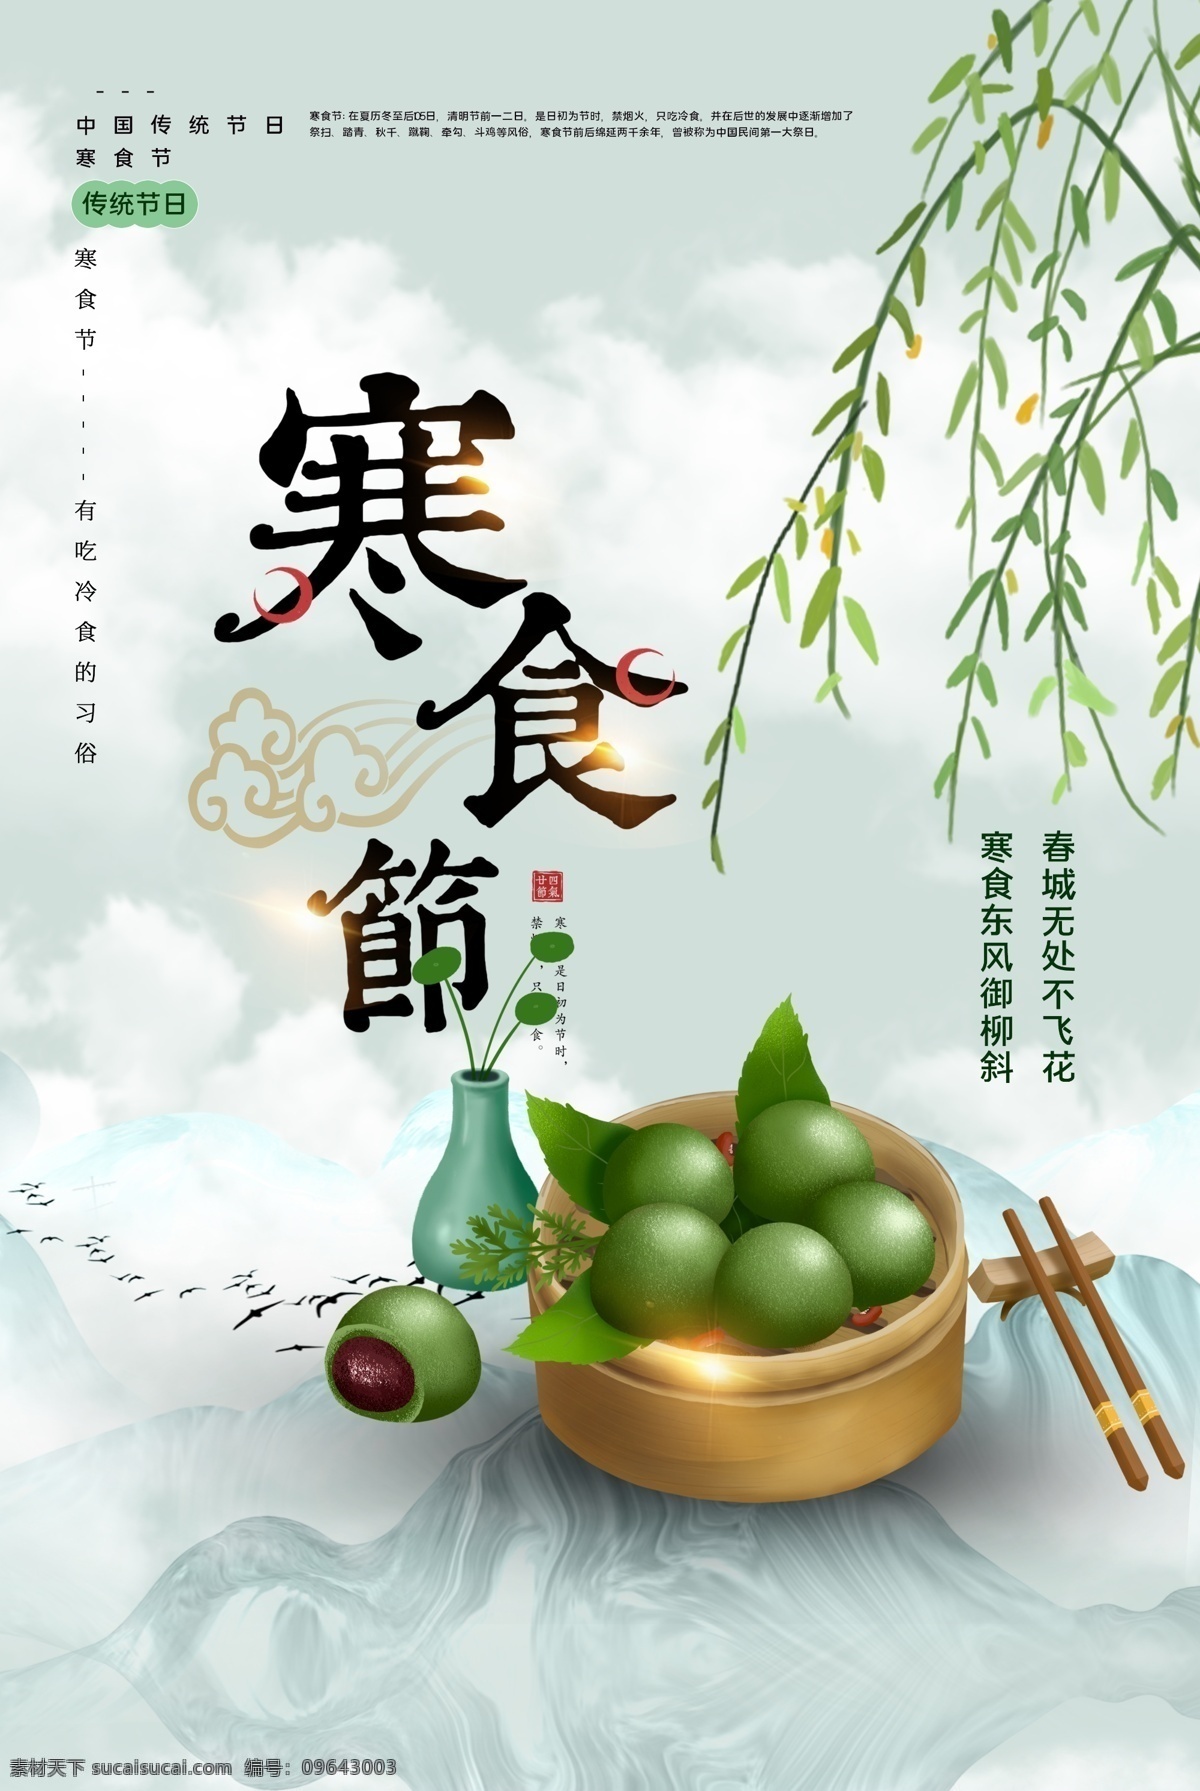 寒食节 传统 活动 宣传海报 素材图片 宣传 海报 传统节日